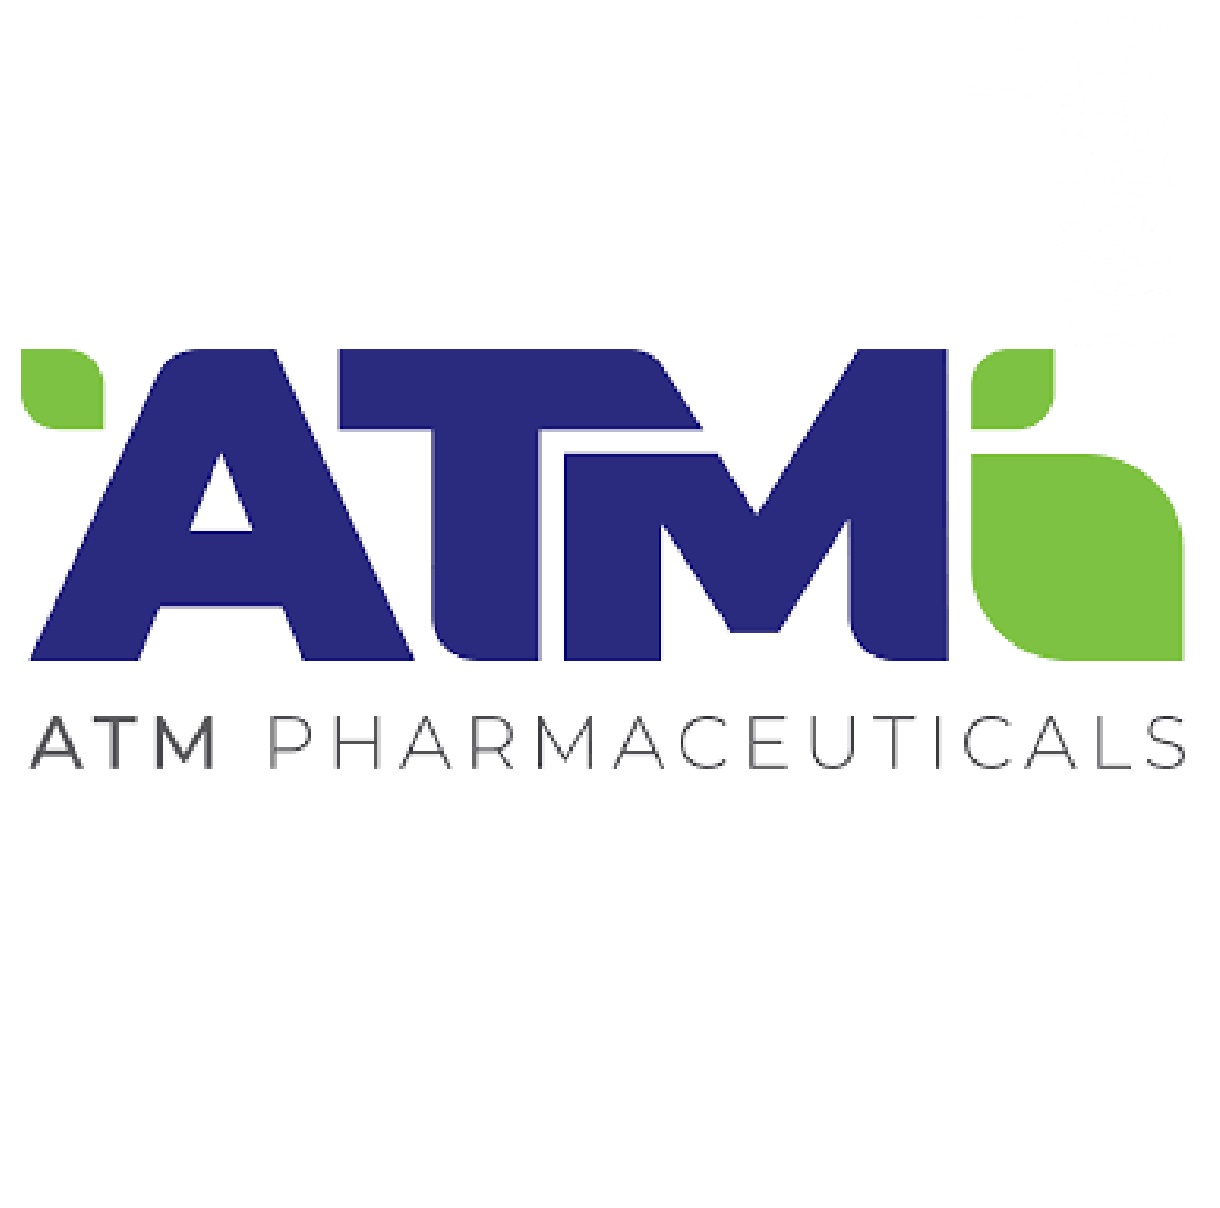 ATM Pharmaceutical